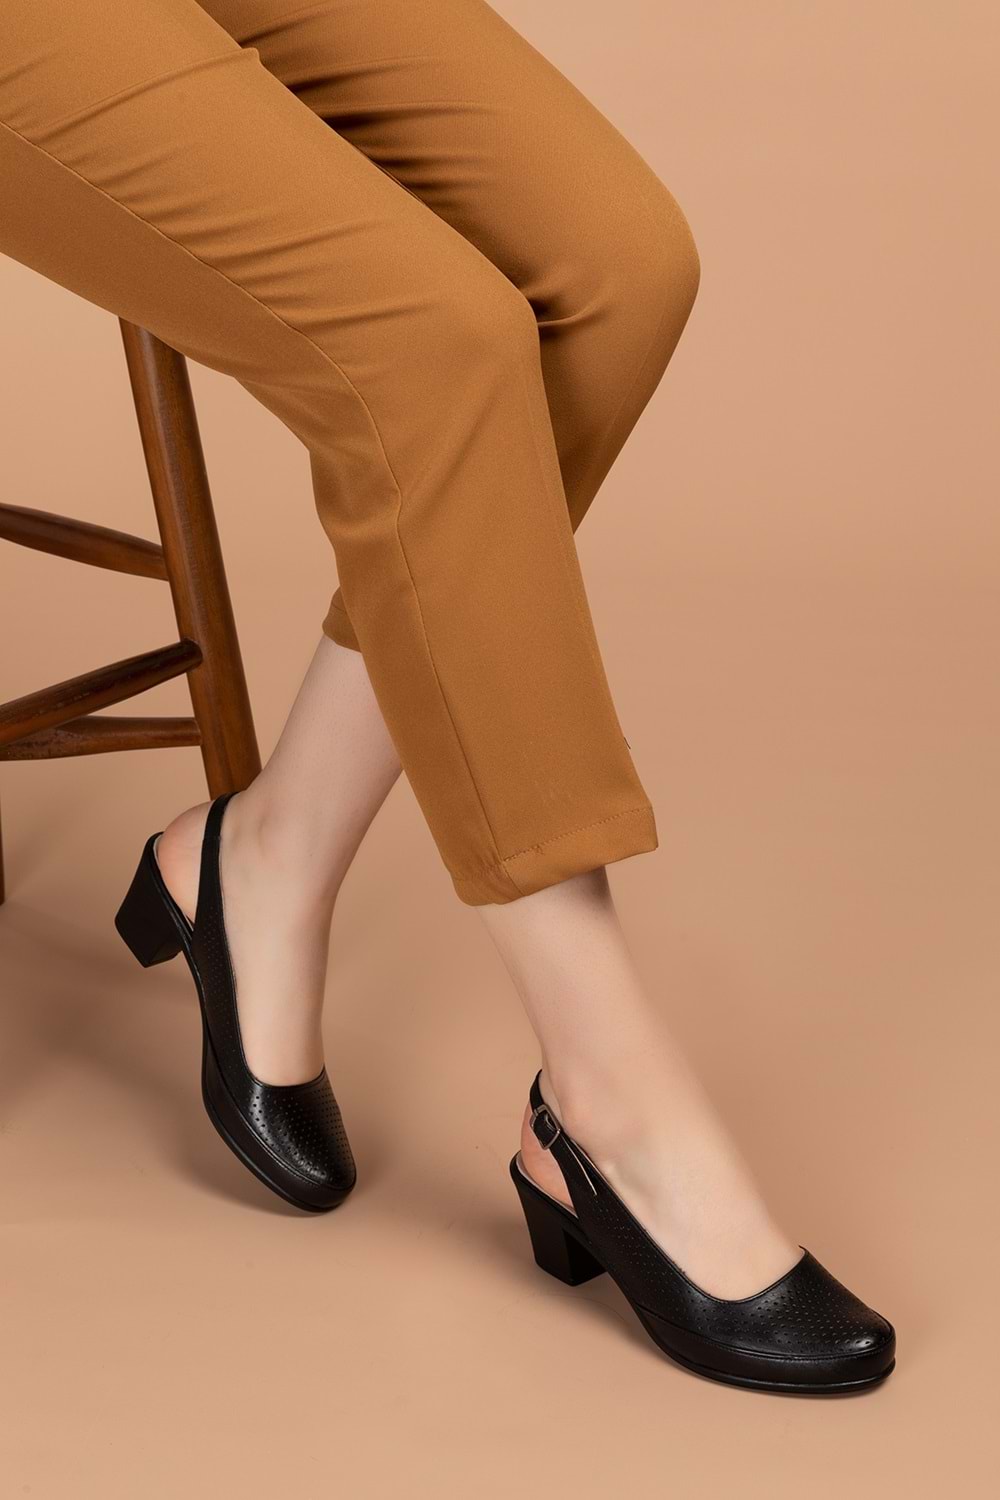 Gondol Kadın Hakiki Deri Klasik Topuklu Ayakkabı vdt.272 - Siyah - 34